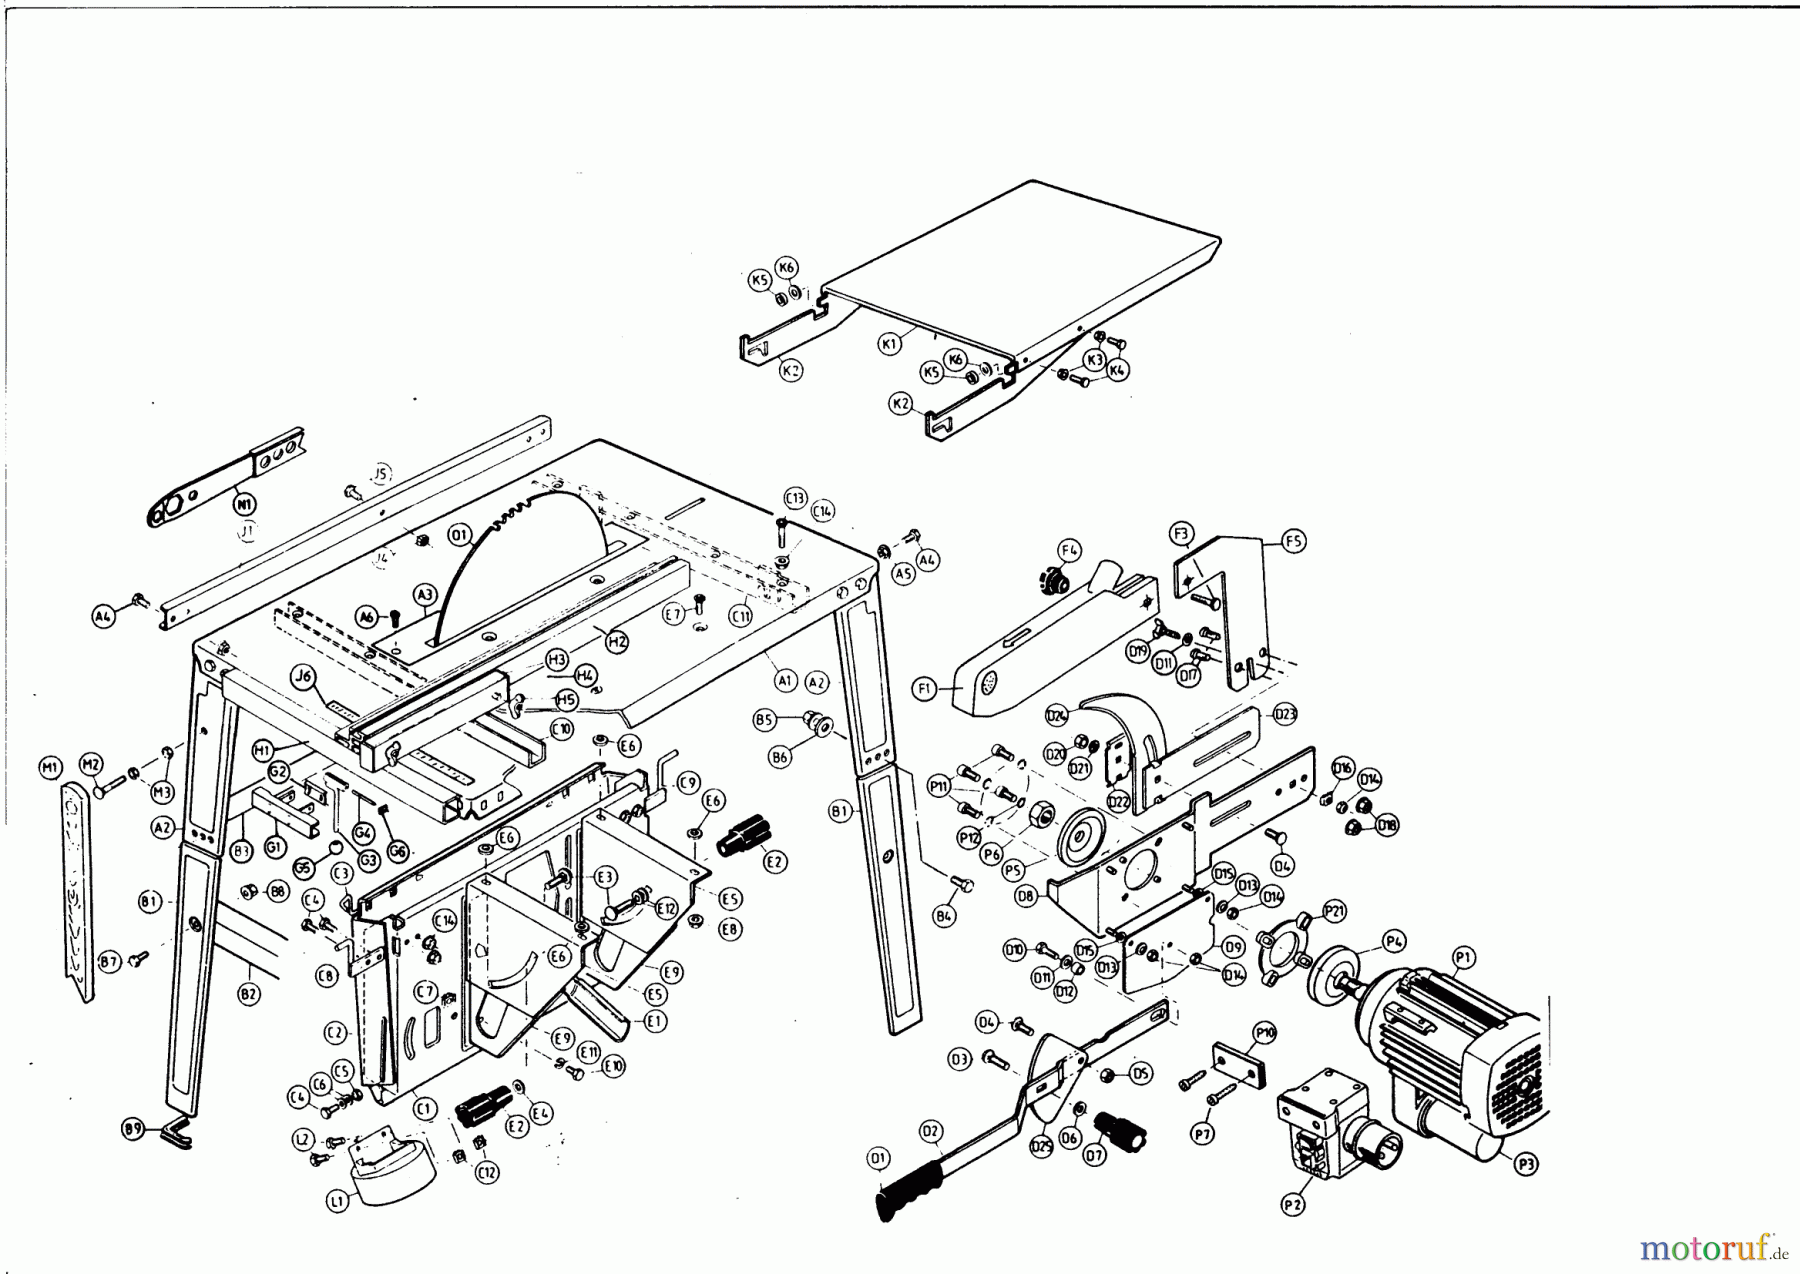  AL-KO Heimwerkertechnik Tischkreissägen NHS 4,5 / 220V Seite 1